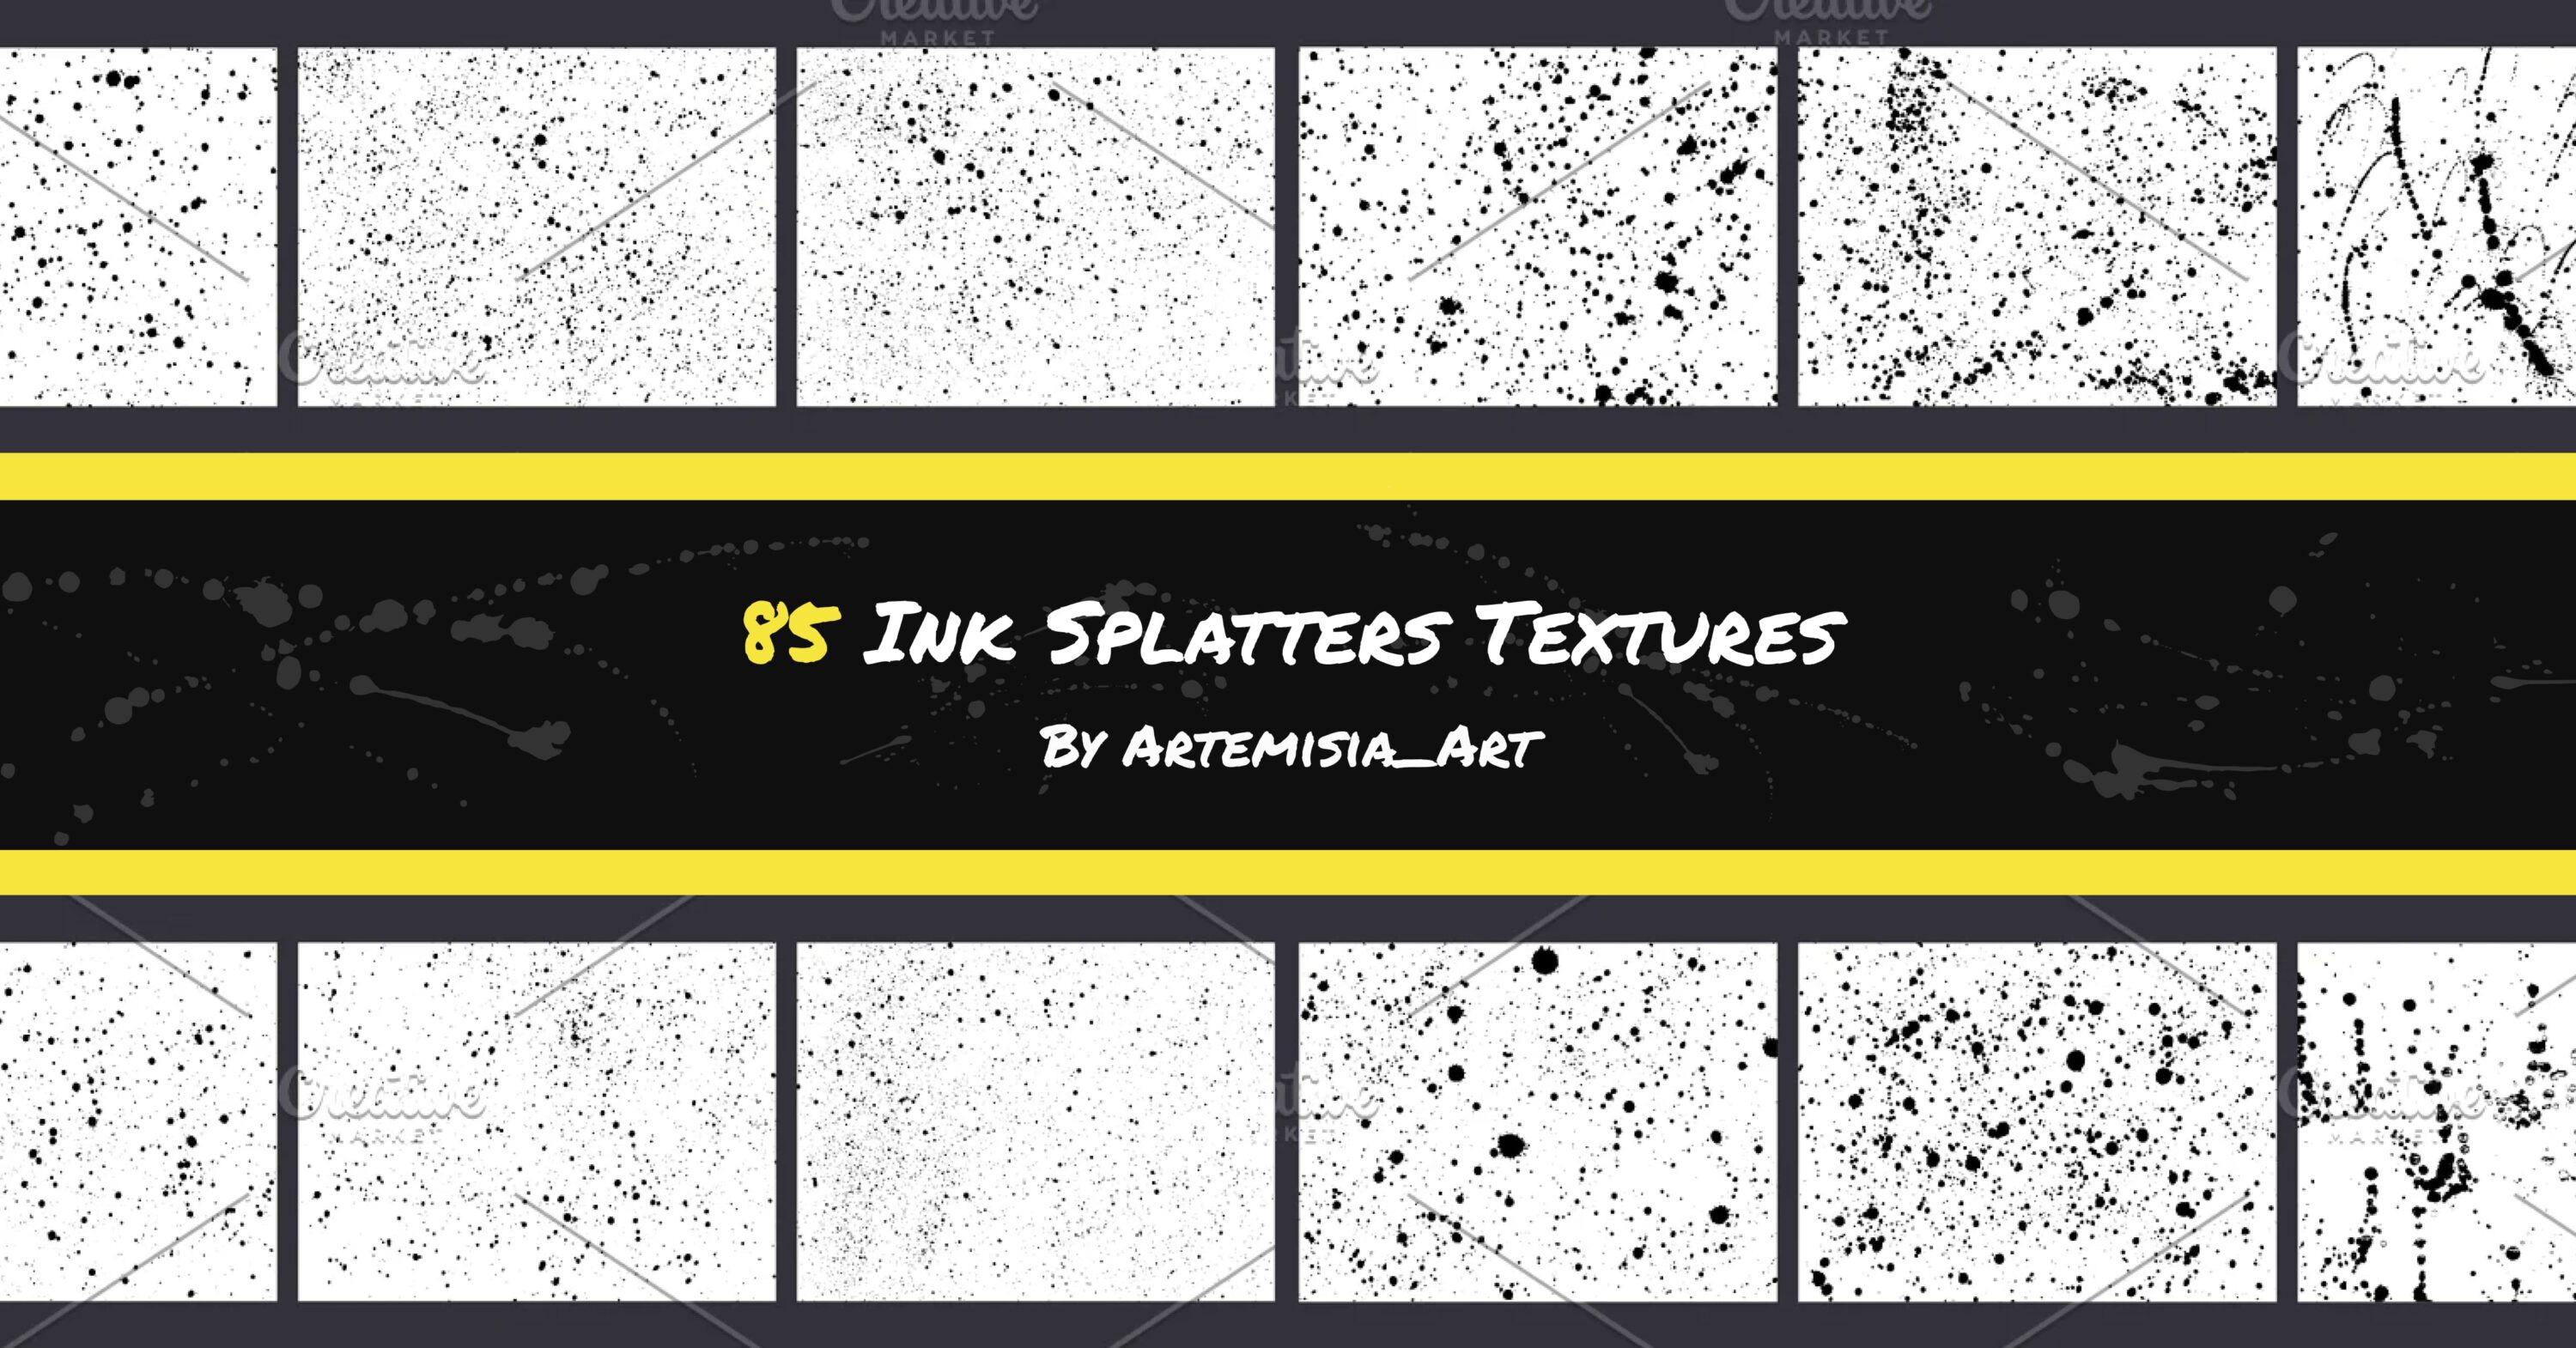 85 Ink Splatters Textures facebook image.